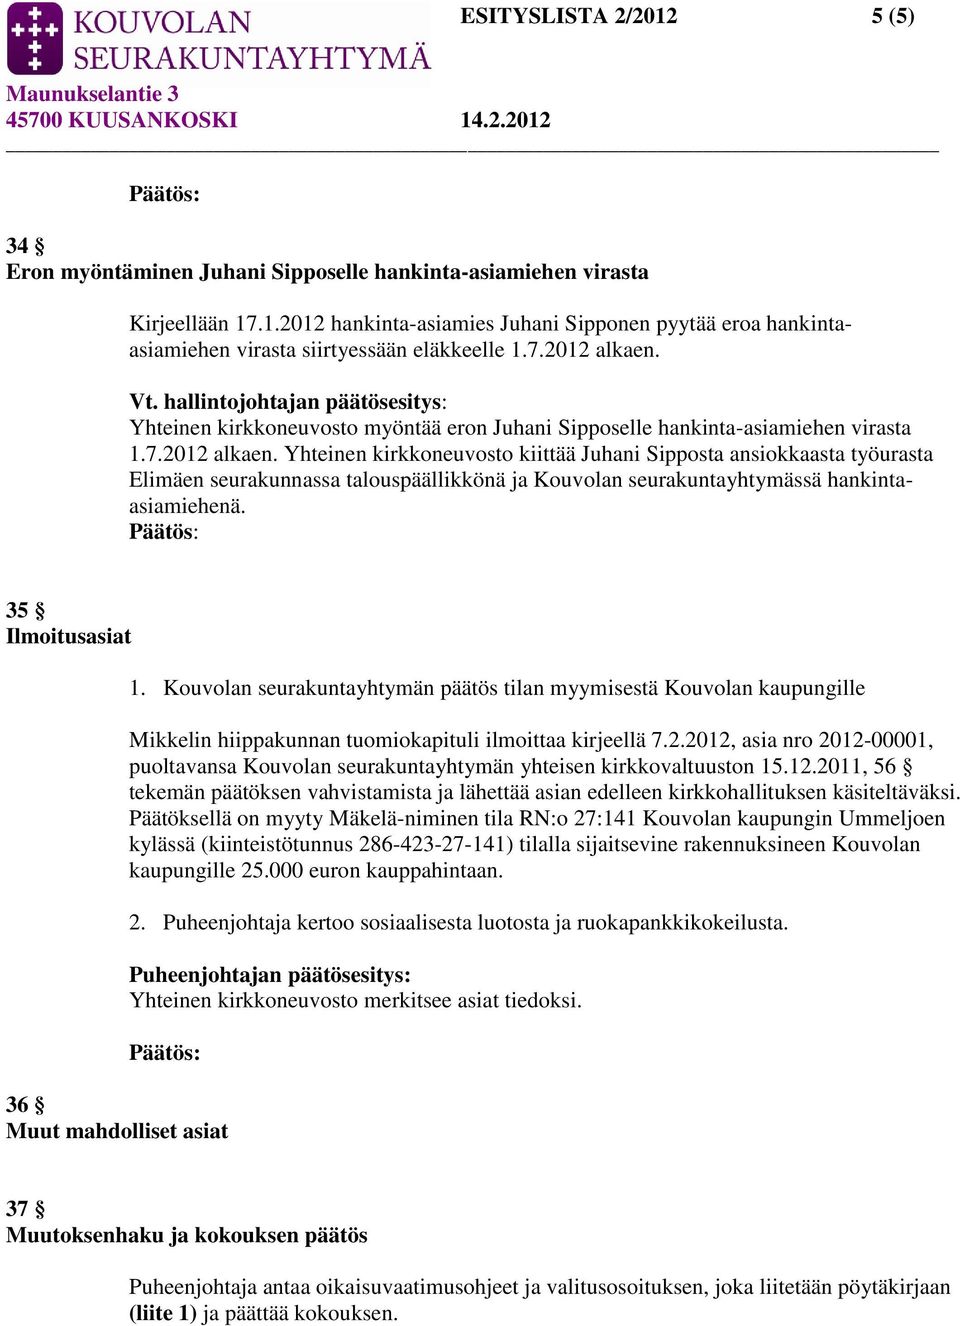 35 Ilmoitusasiat 1. Kouvolan seurakuntayhtymän päätös tilan myymisestä Kouvolan kaupungille Mikkelin hiippakunnan tuomiokapituli ilmoittaa kirjeellä 7.2.